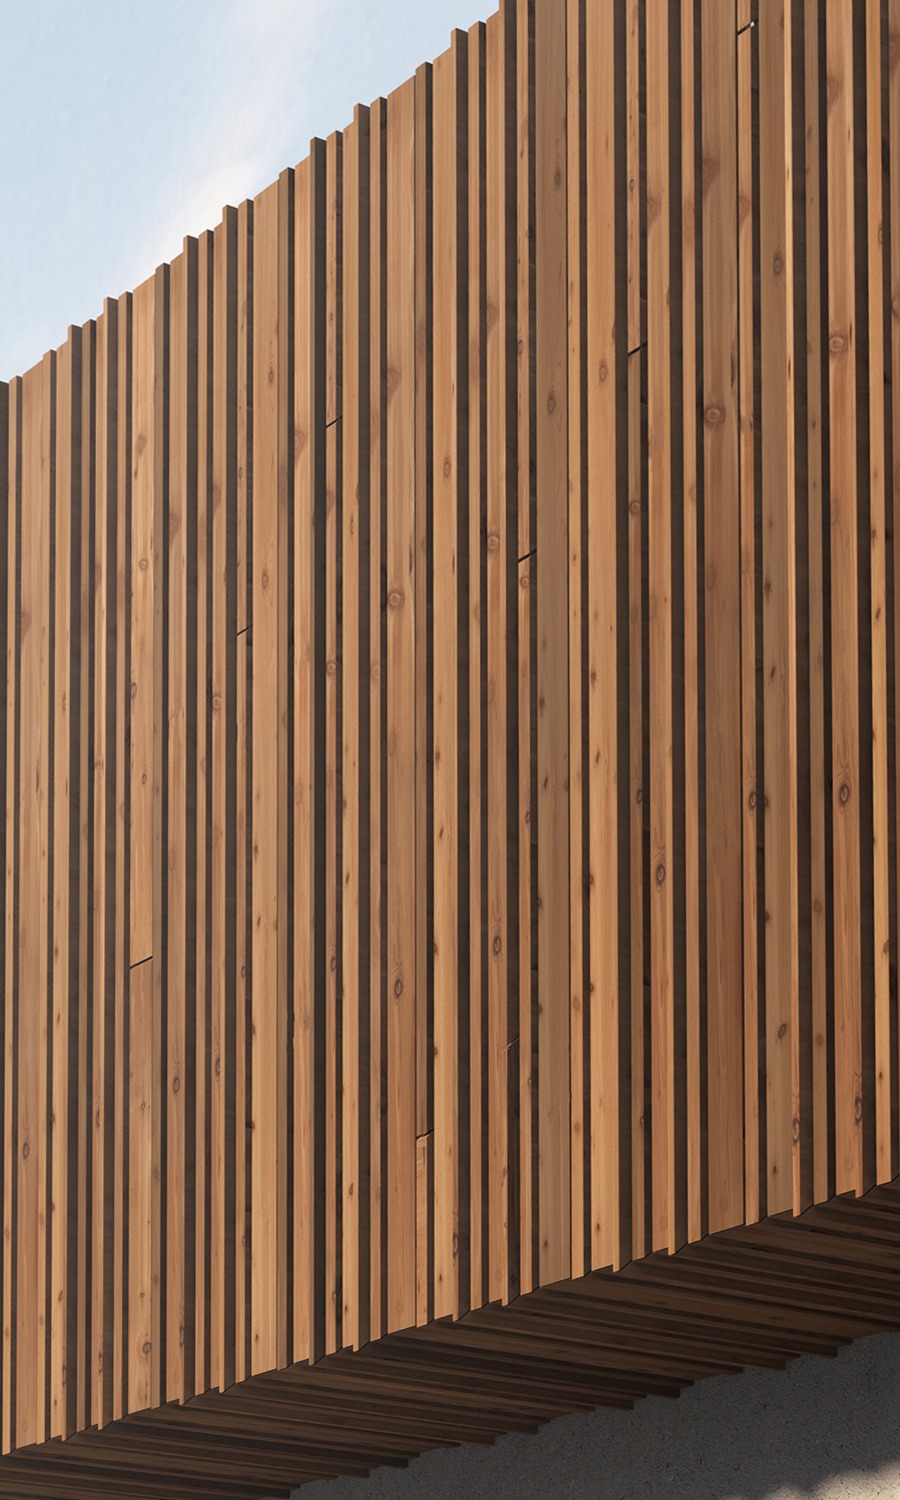 Bronsø thermo wood facade cladding